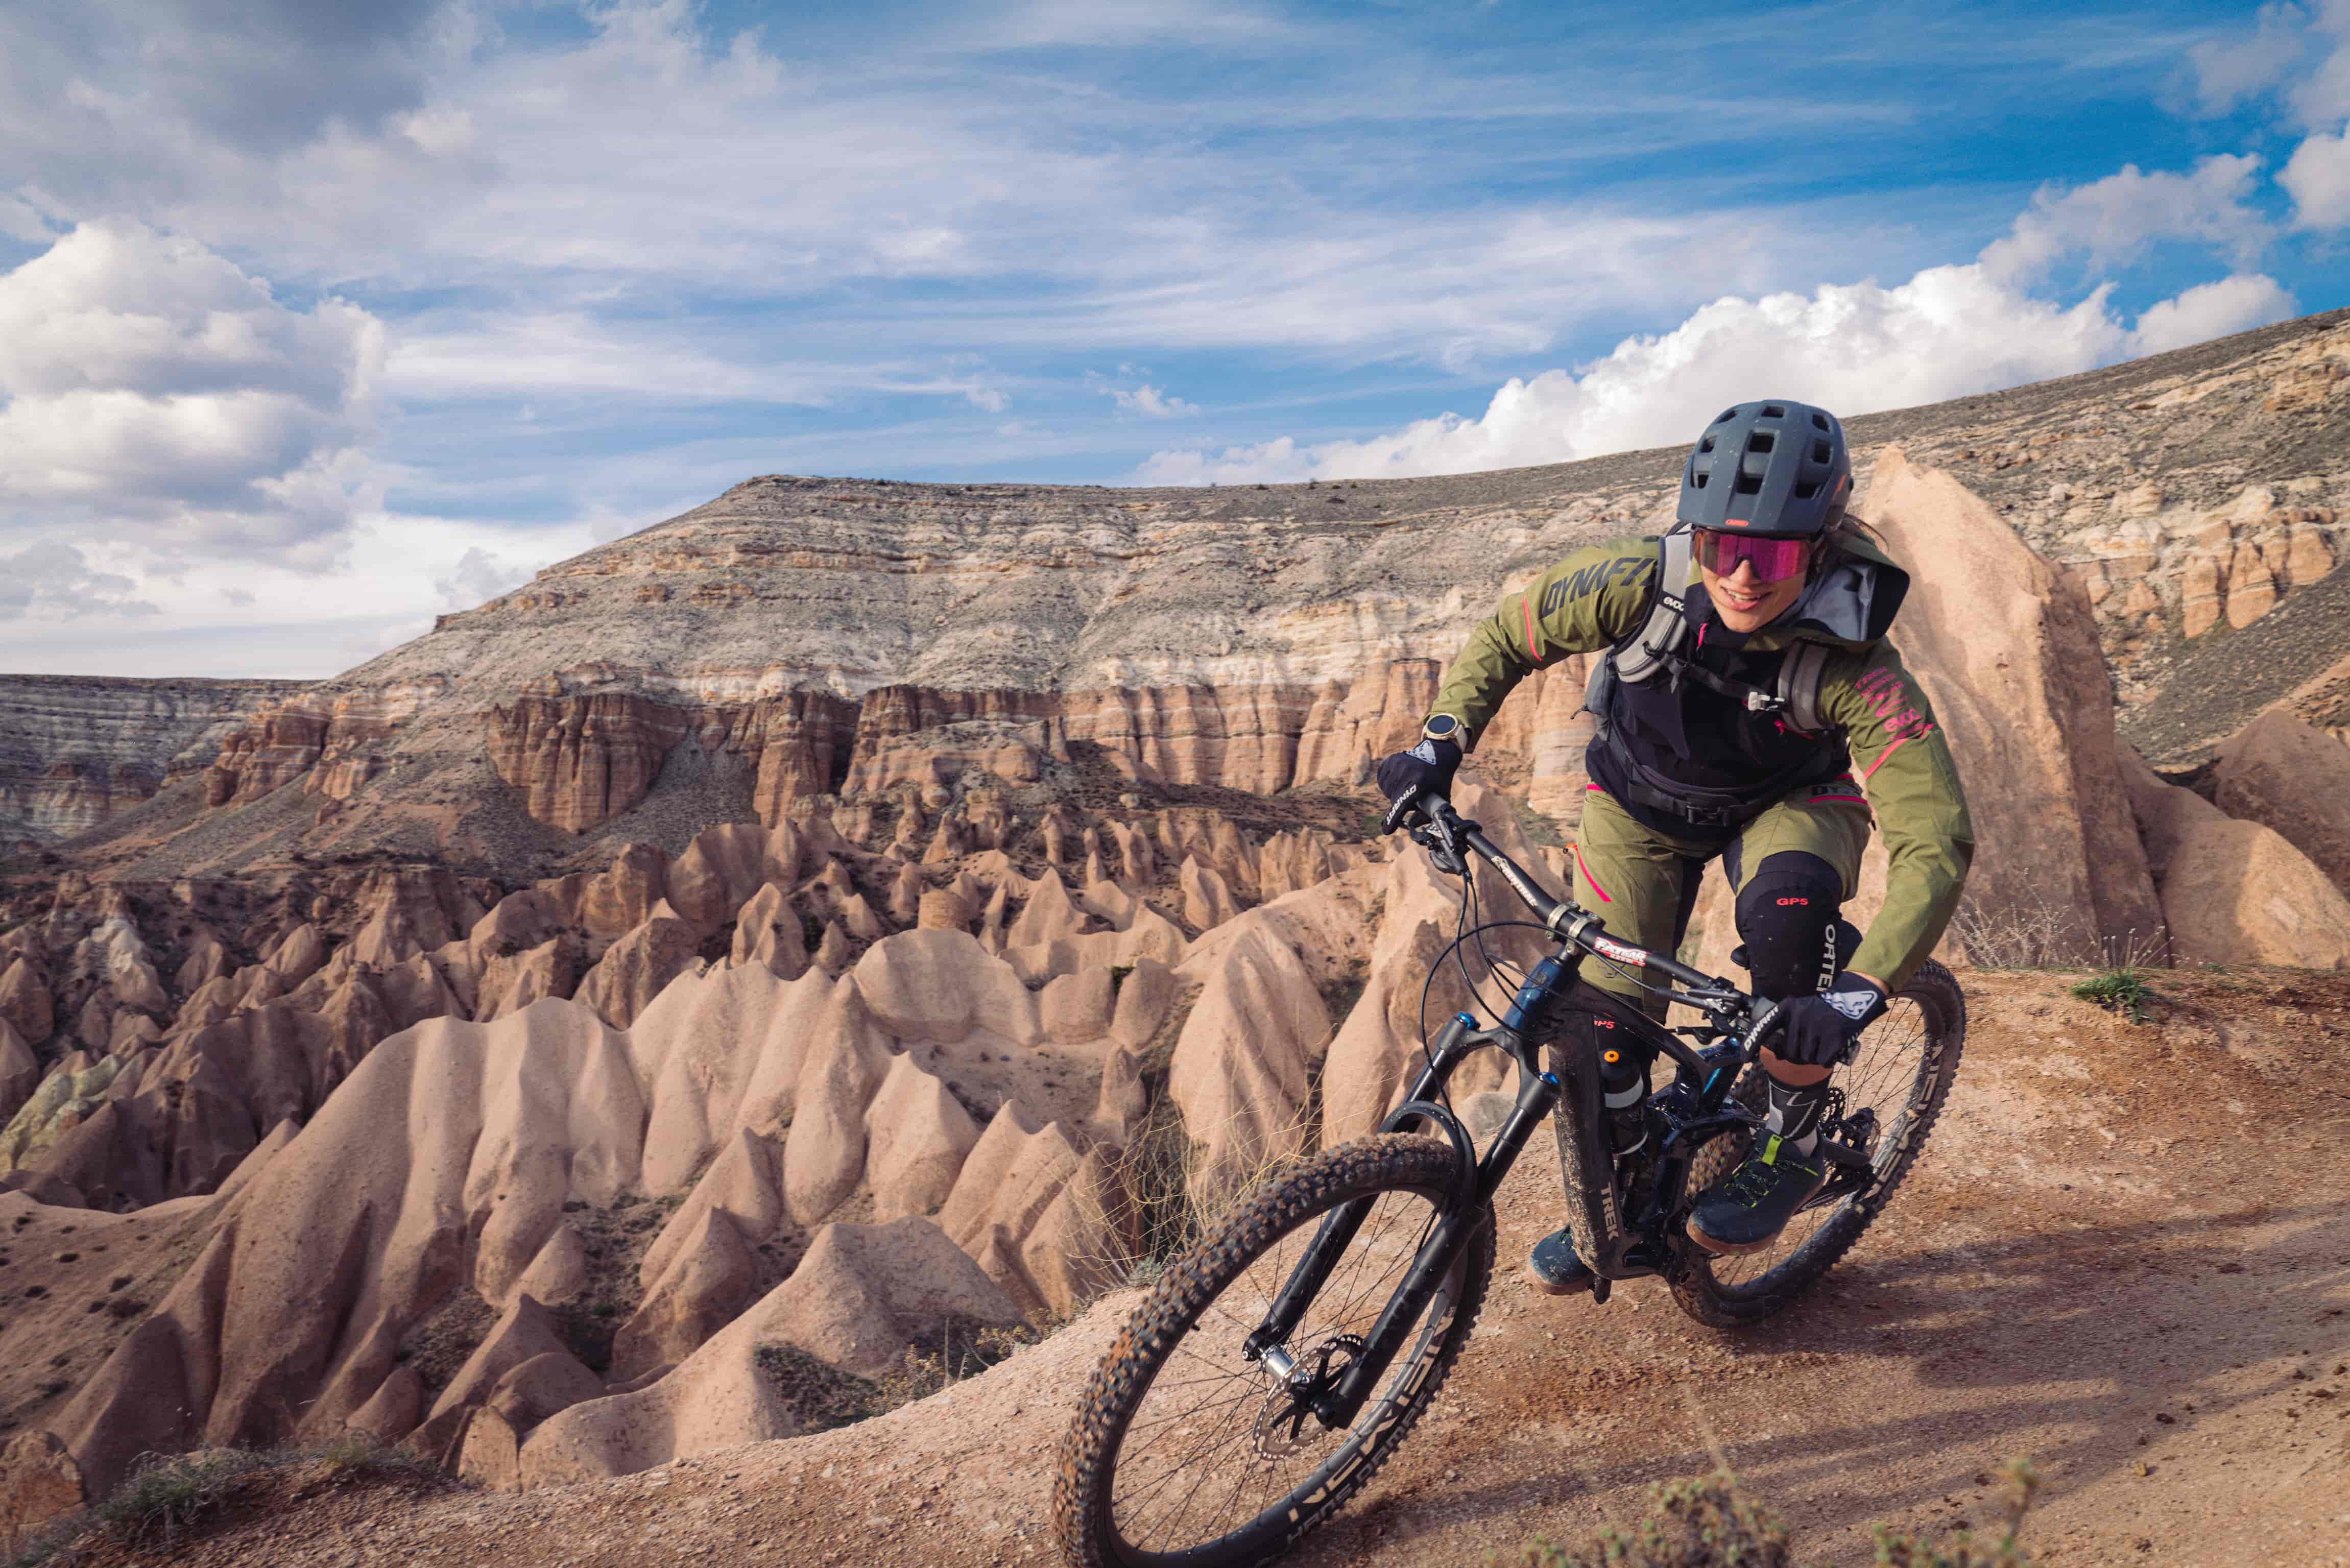 Mountainbikerin mit Helm und Sonnenbrille fährt durch felsige Landschaft